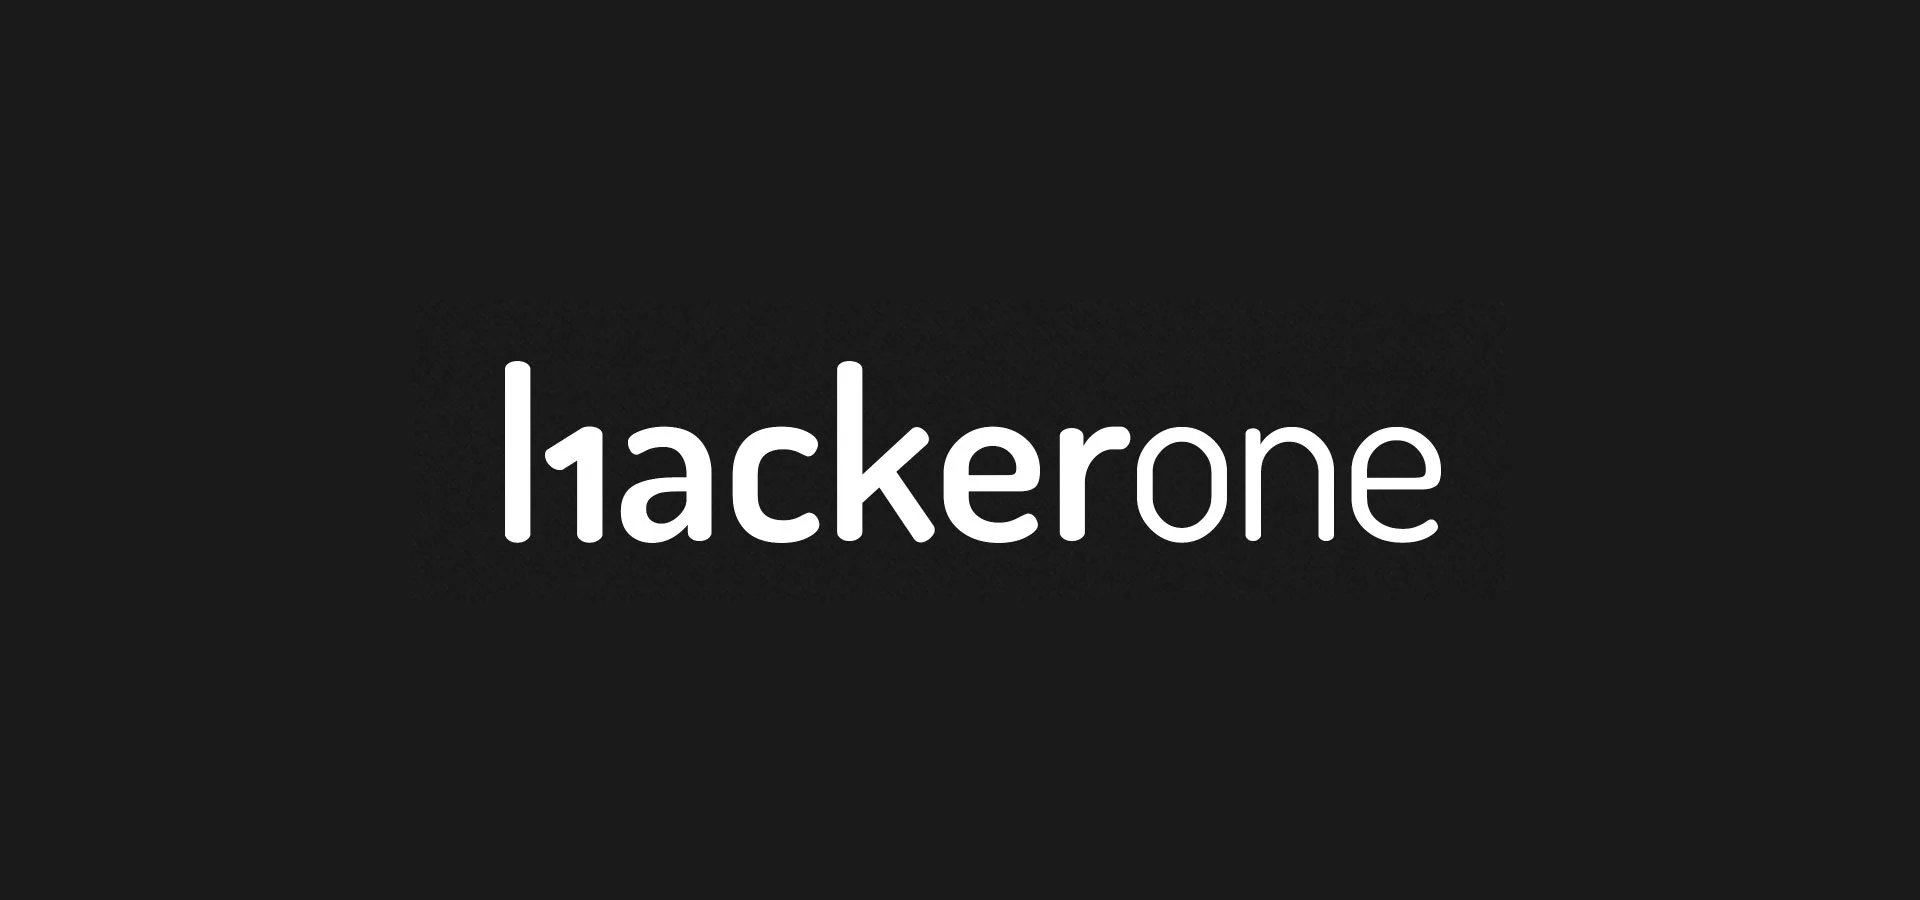 hackerone